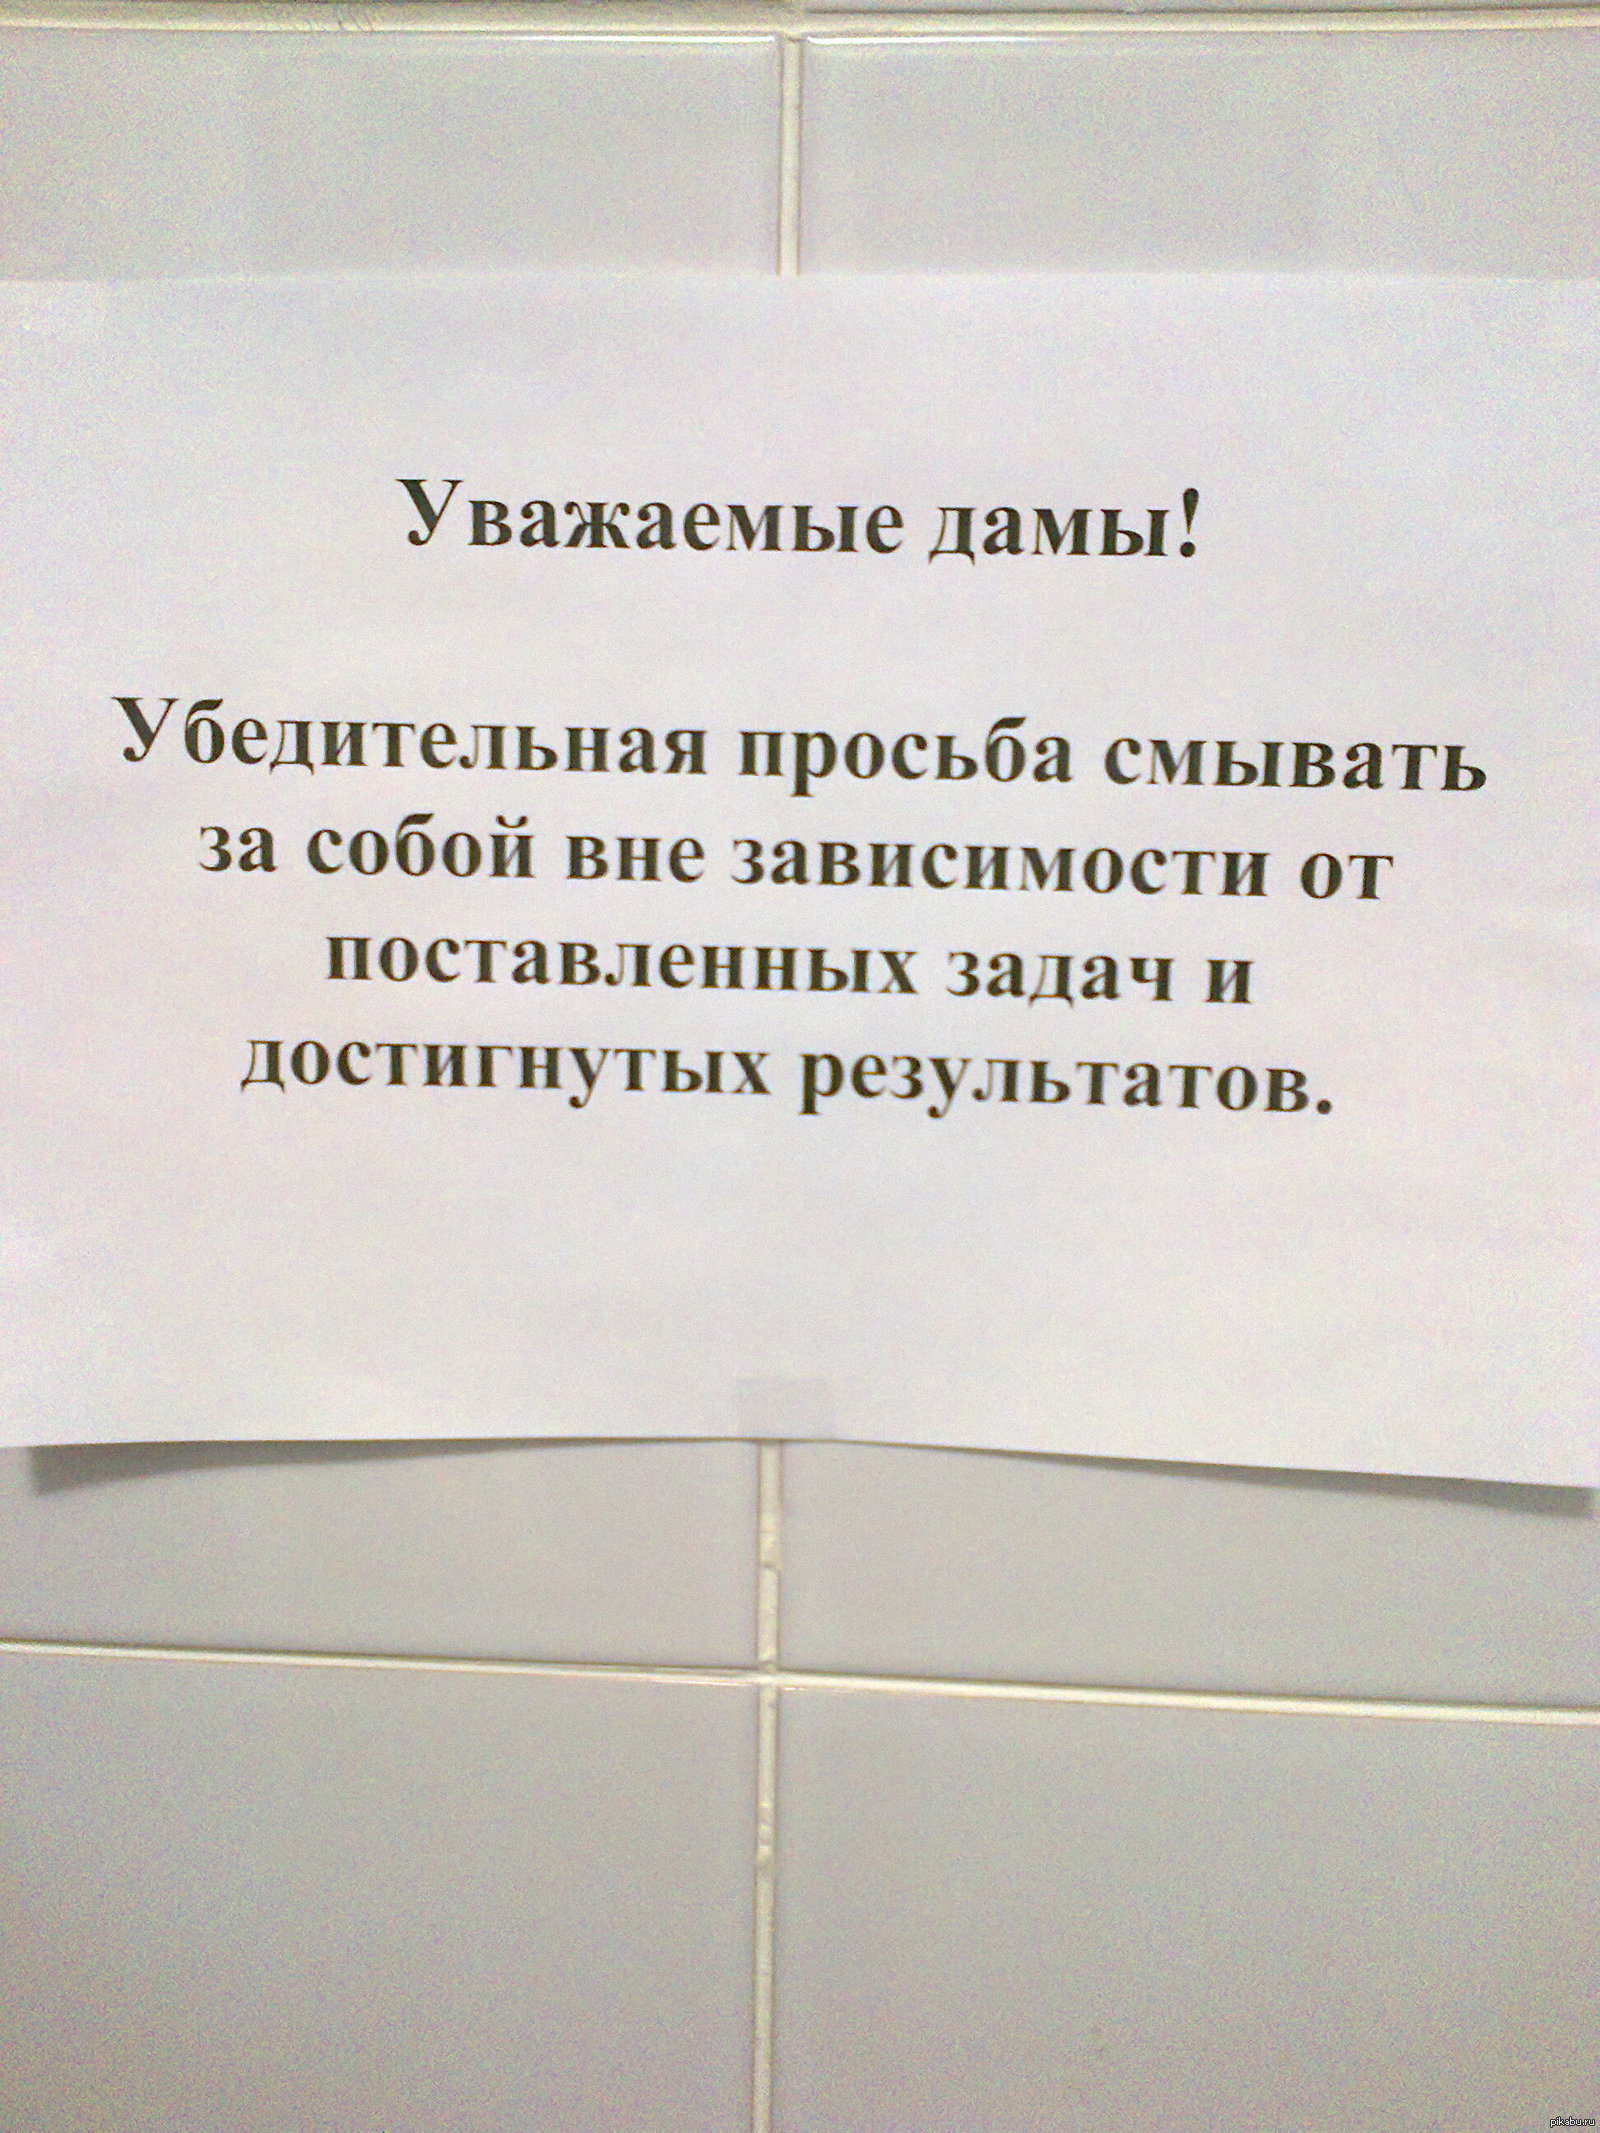 Объявление в туалет